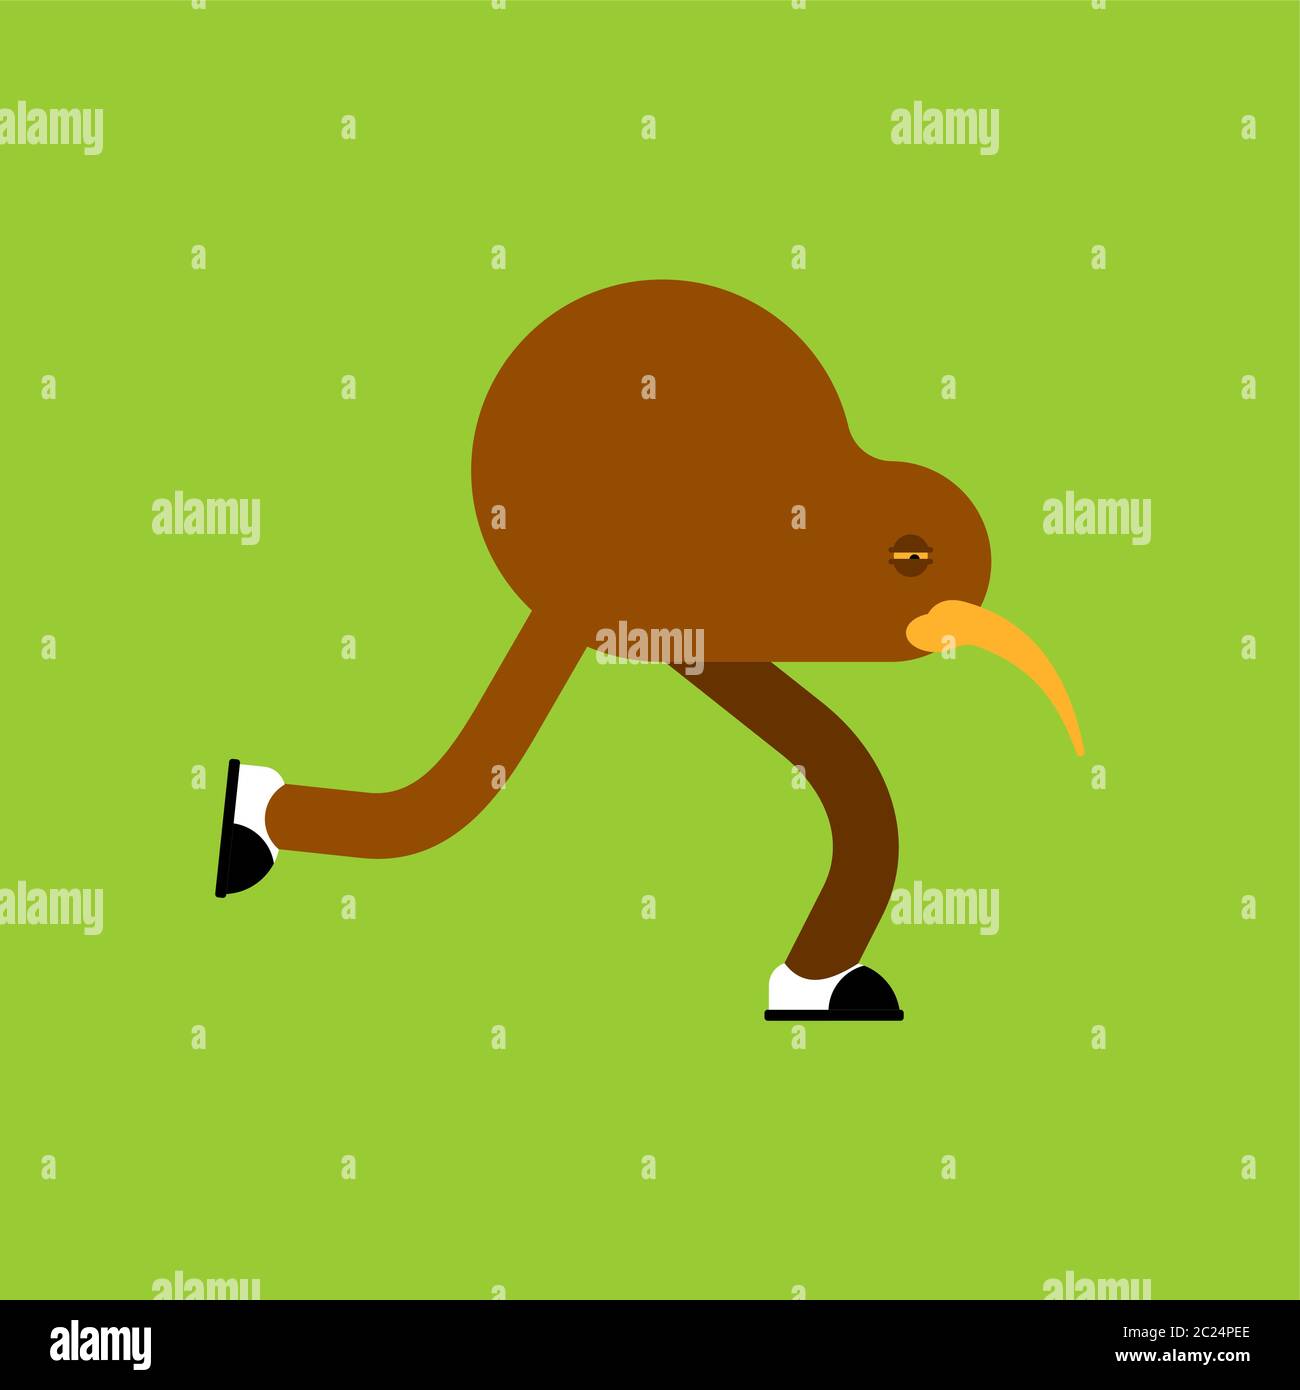 Kiwi bird cartoon isolated. little bird run vector illustration Stock  Vector Image & Art - Alamy